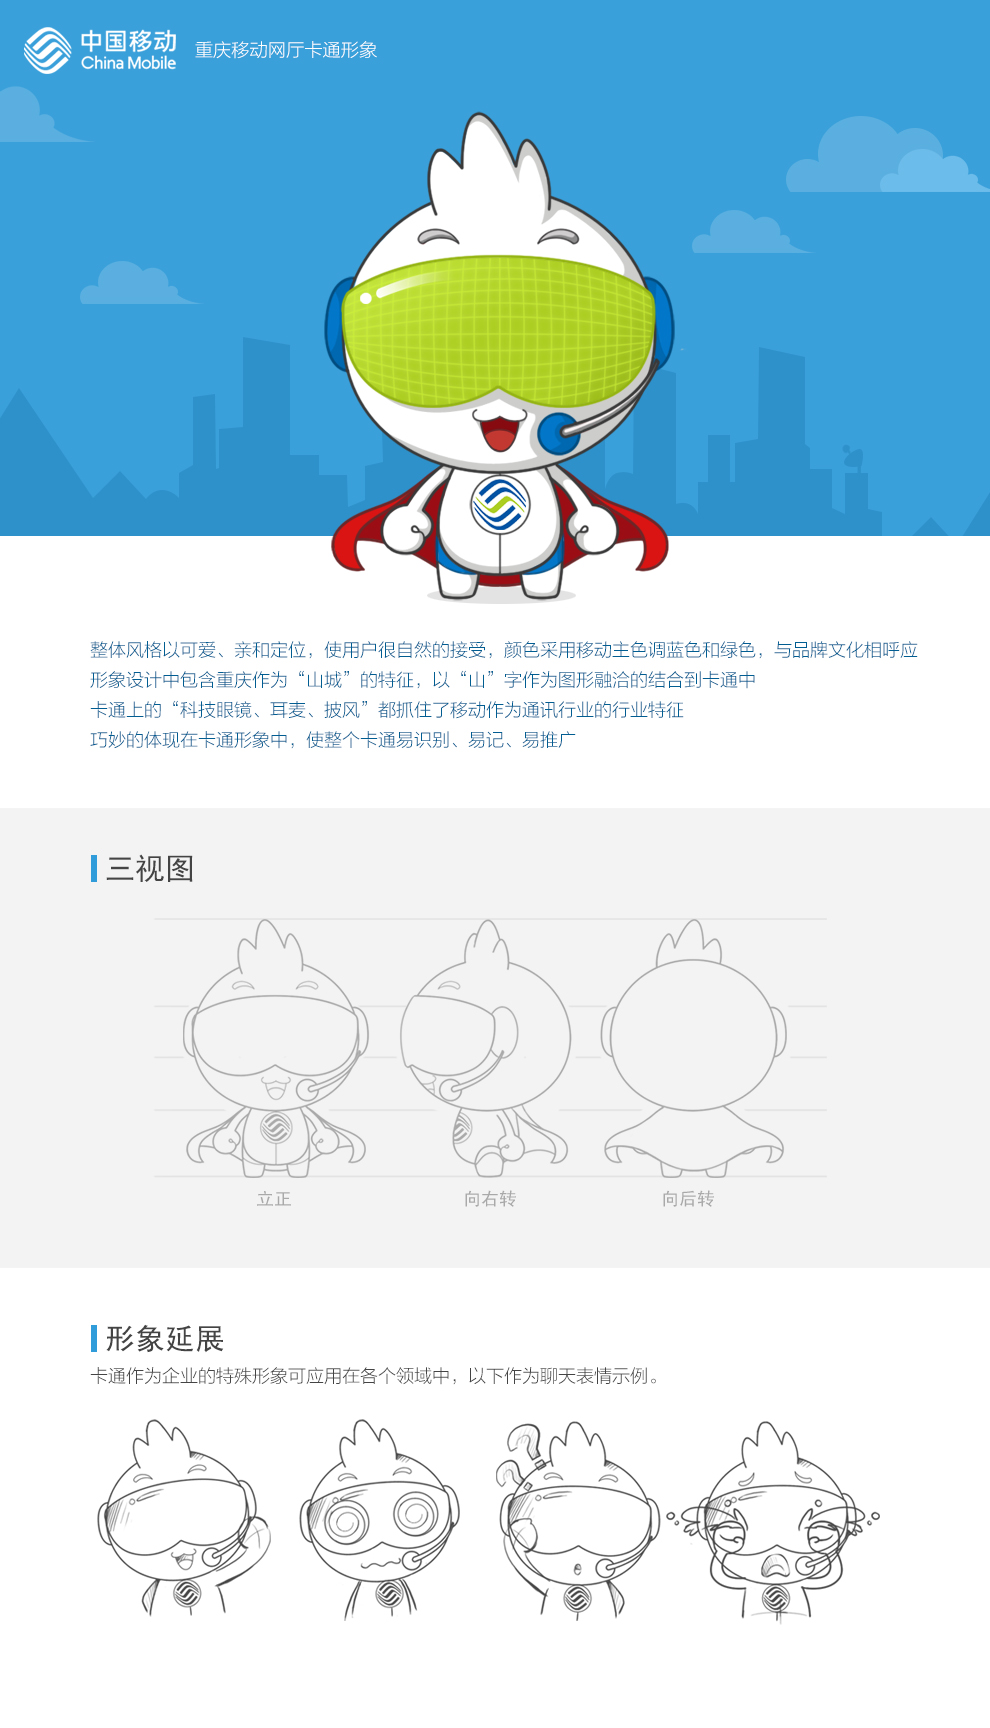 中国移动-网厅卡通形象